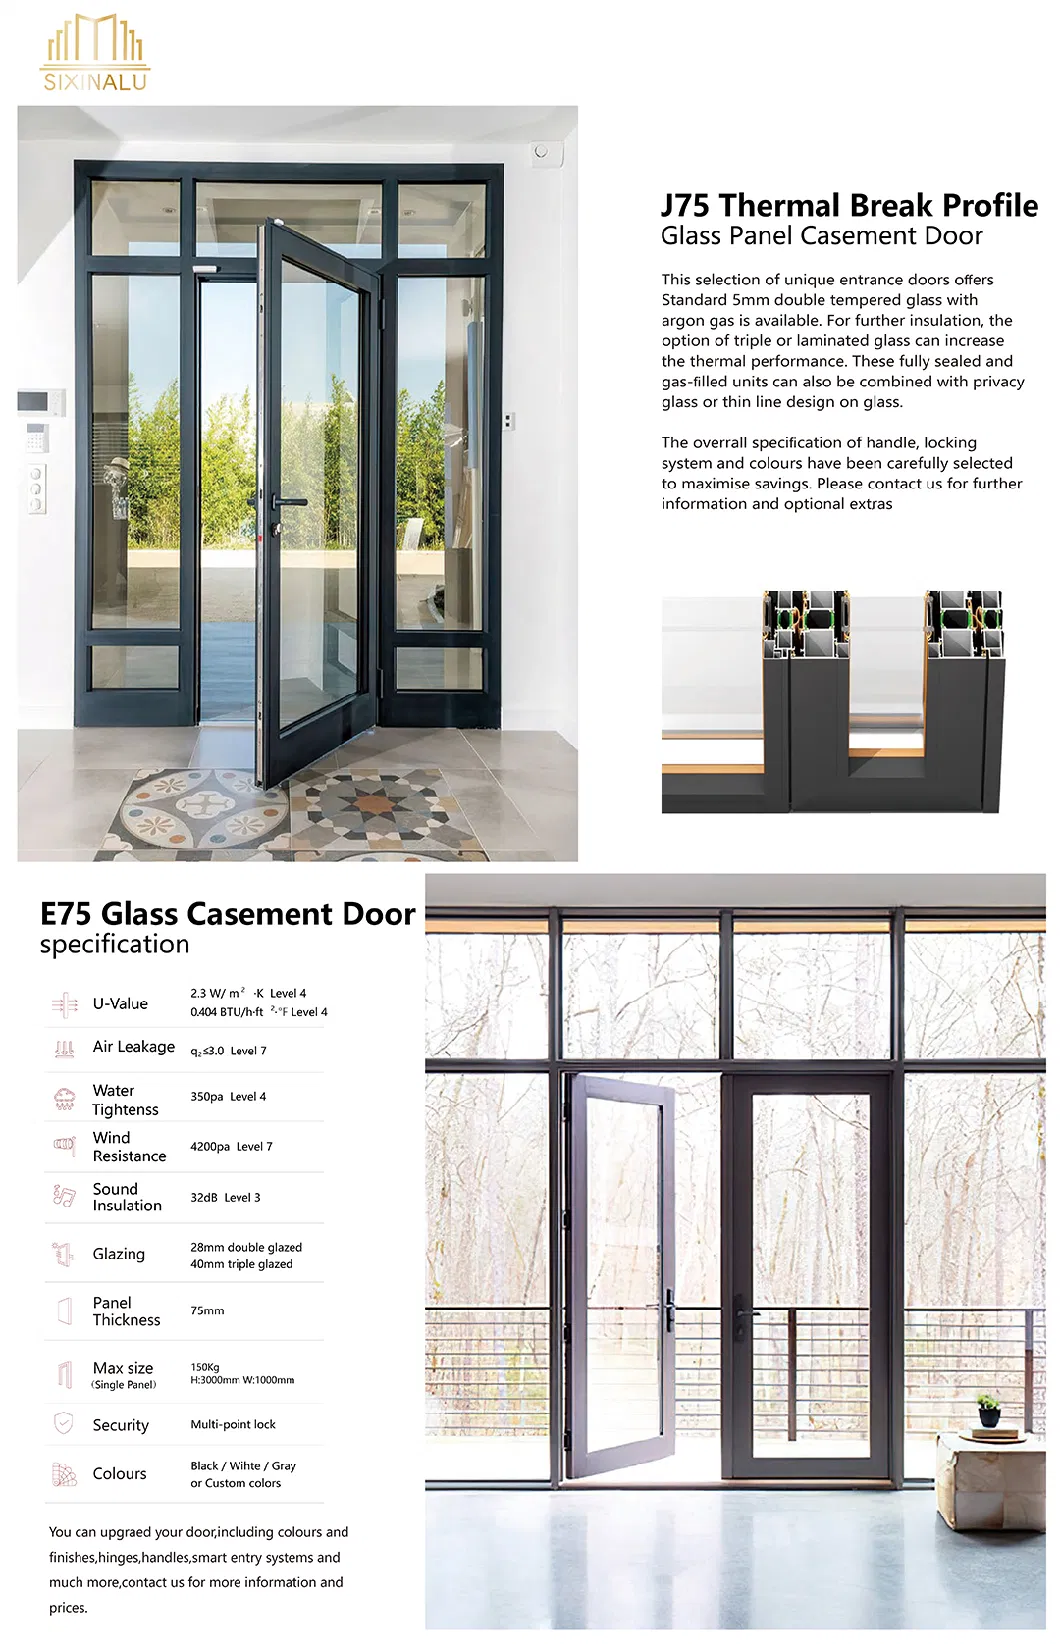 Sixinalu Exterior Interior Internal Indoor Metal Crittall European Style Aluminum Profile Steel Door Glass Wall for Room Divider French Casement Door